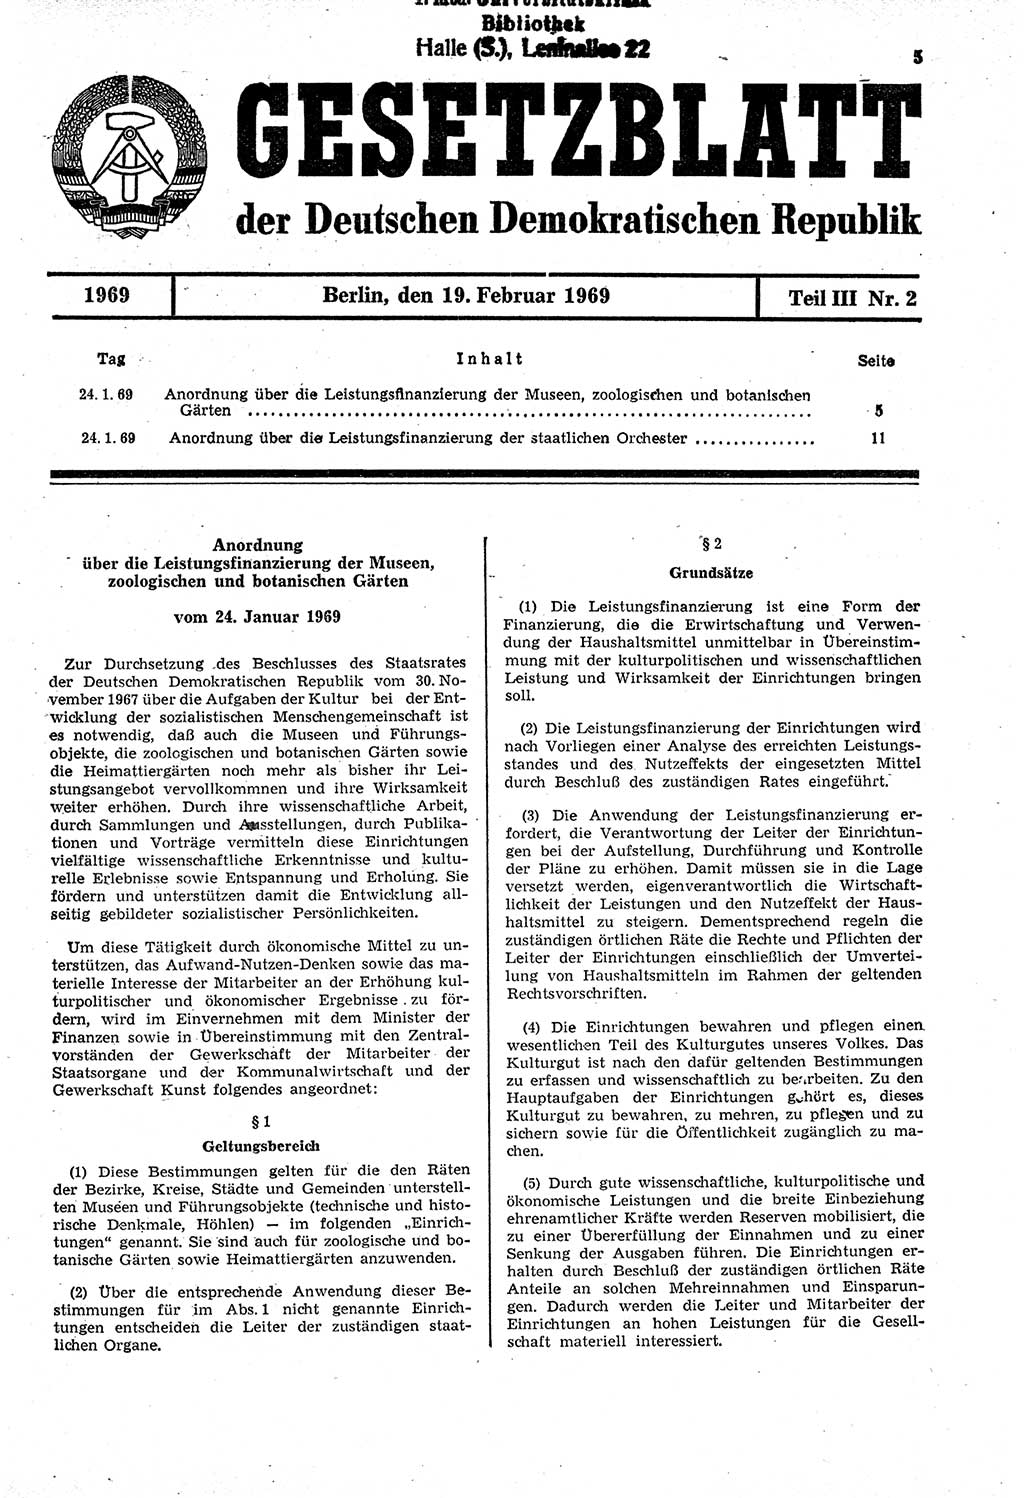 Gesetzblatt (GBl.) der Deutschen Demokratischen Republik (DDR) Teil ⅠⅠⅠ 1969, Seite 5 (GBl. DDR ⅠⅠⅠ 1969, S. 5)